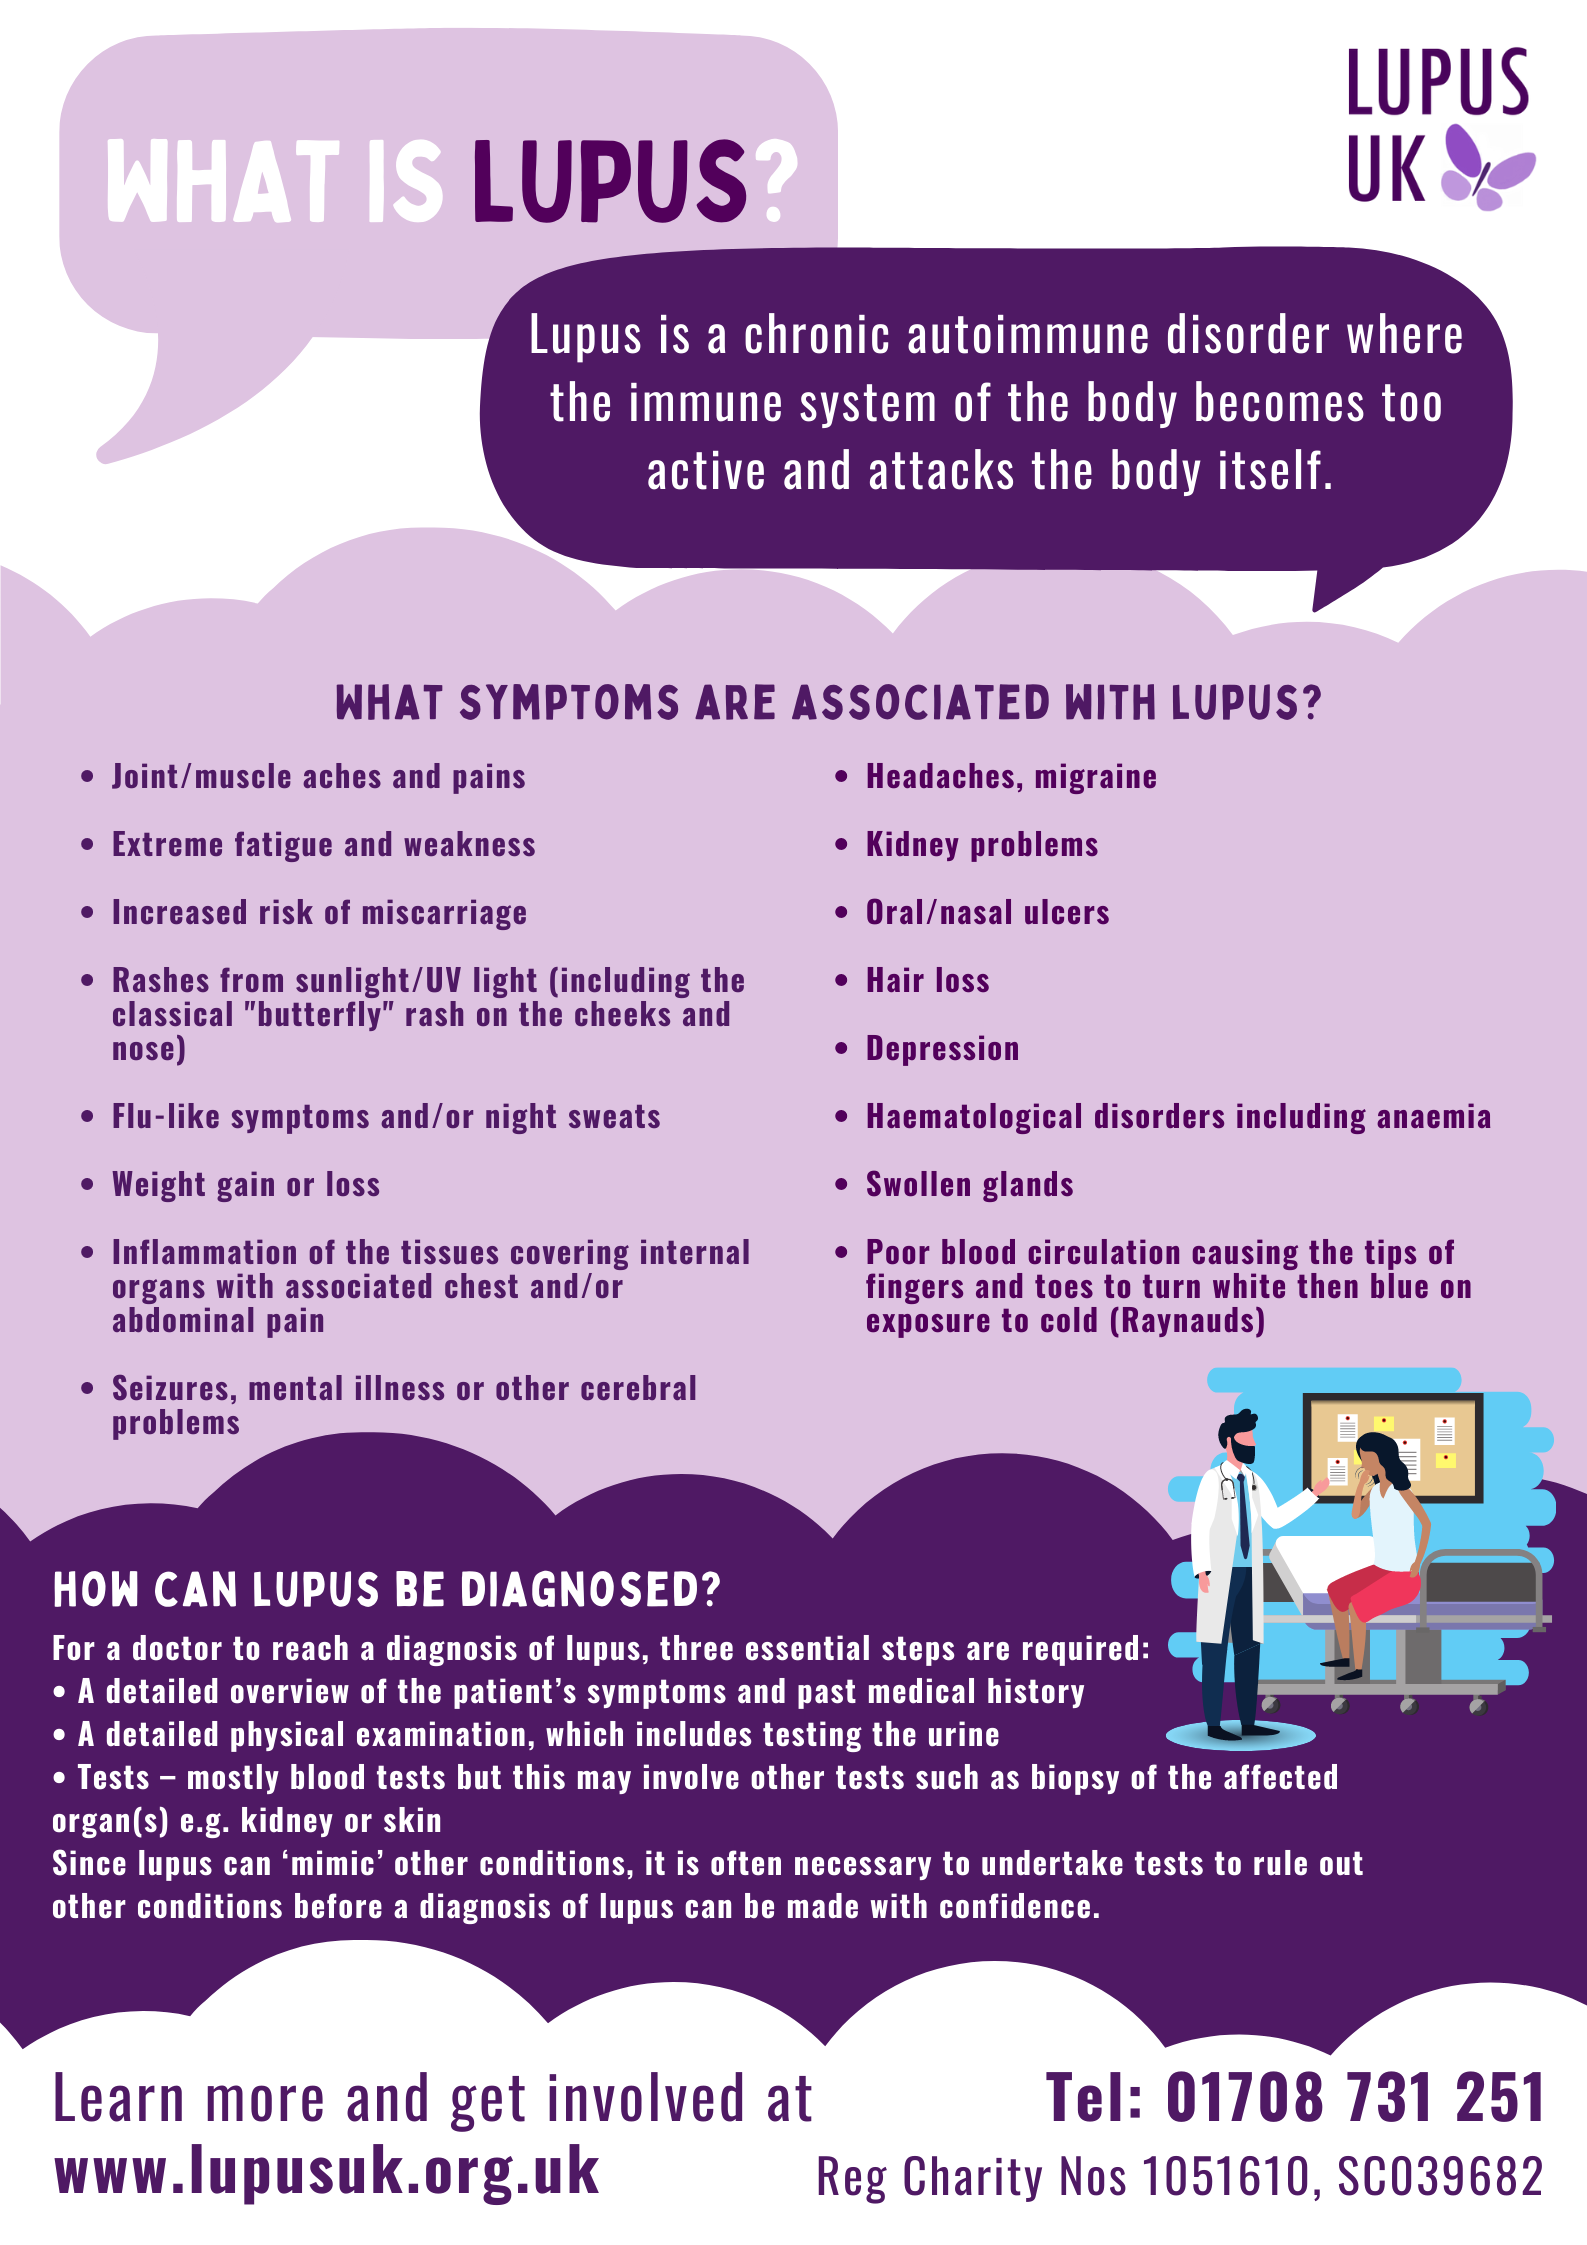 World Lupus Day (May 10th) LUPUS UK